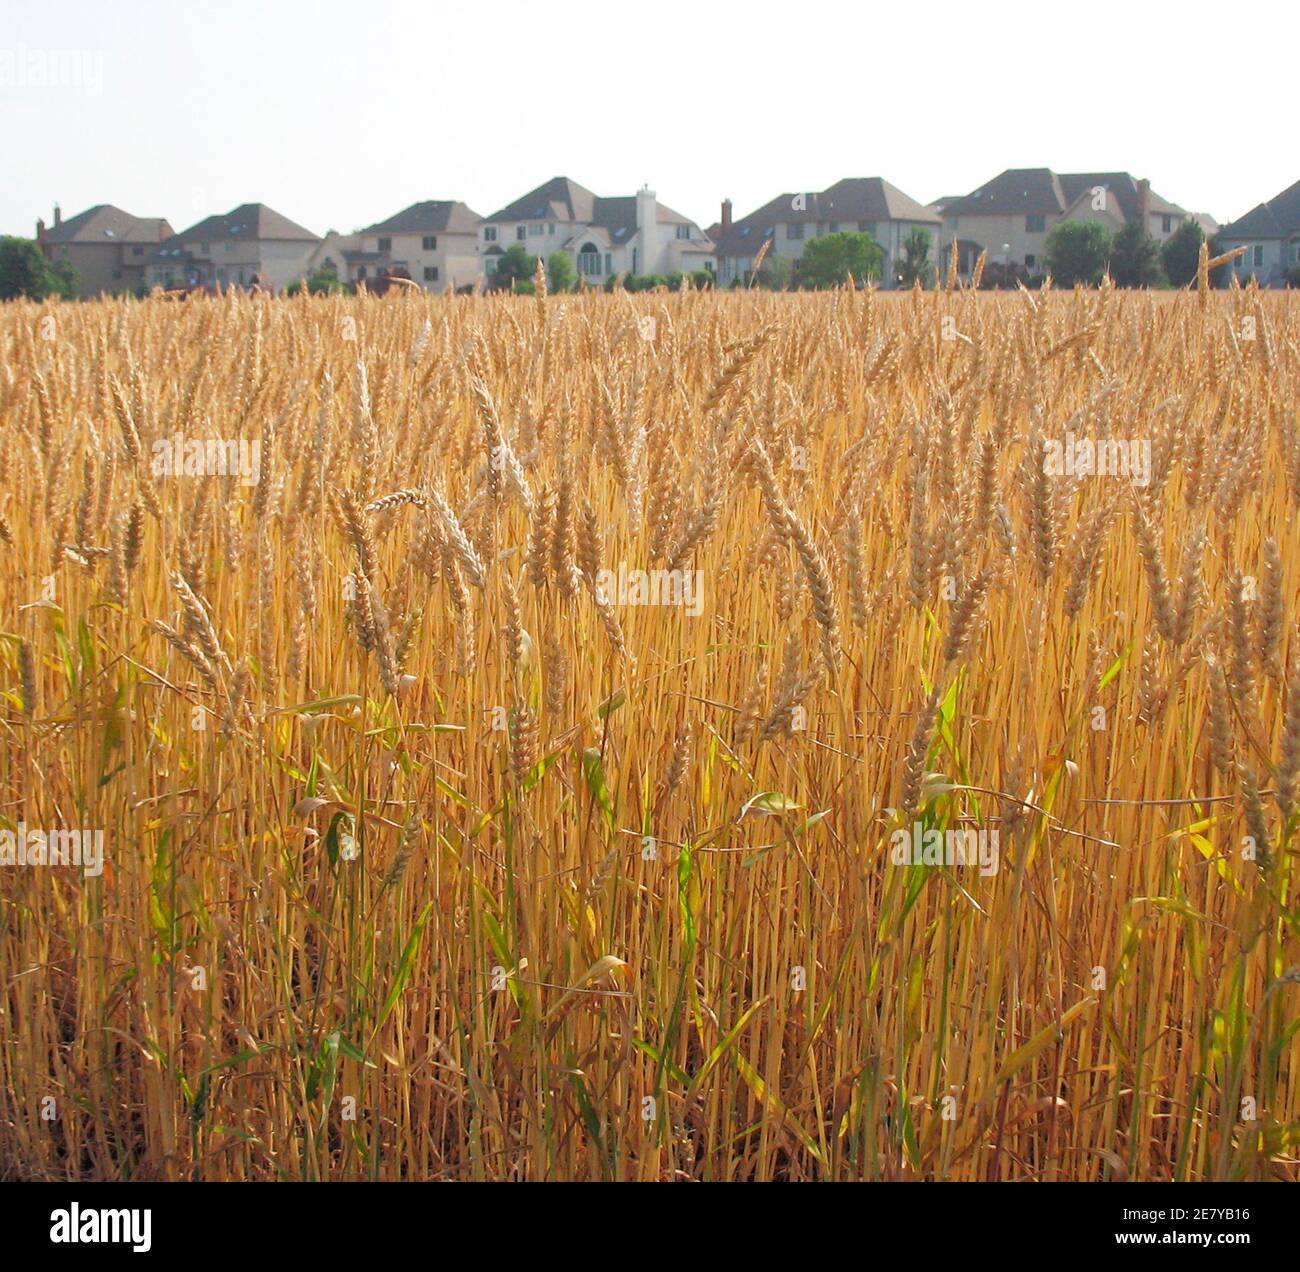 Un champ de blé d'hiver rouge tendre à environ une semaine de la récolte est photographié dans la banlieue de Naperville, Illinois, à Chicago, le 24 juin 2007. Appelons-le la récolte de blé de Windy City. Il est loin des États américains du Kansas ou du Dakota du Nord, mais les agriculteurs de la banlieue du comté de DuPage, Illinois, à 30 miles (48 km) à l'ouest de Chicago, ont choisi de cultiver du blé cette année -- pas du maïs ou du soja -- Dans quelques-uns des quelques champs de ferme restants de la région, entouré par 'McMansions.' Photo prise le 24 juin 2007. REUTERS/Peter Bohan (ÉTATS-UNIS) Banque D'Images